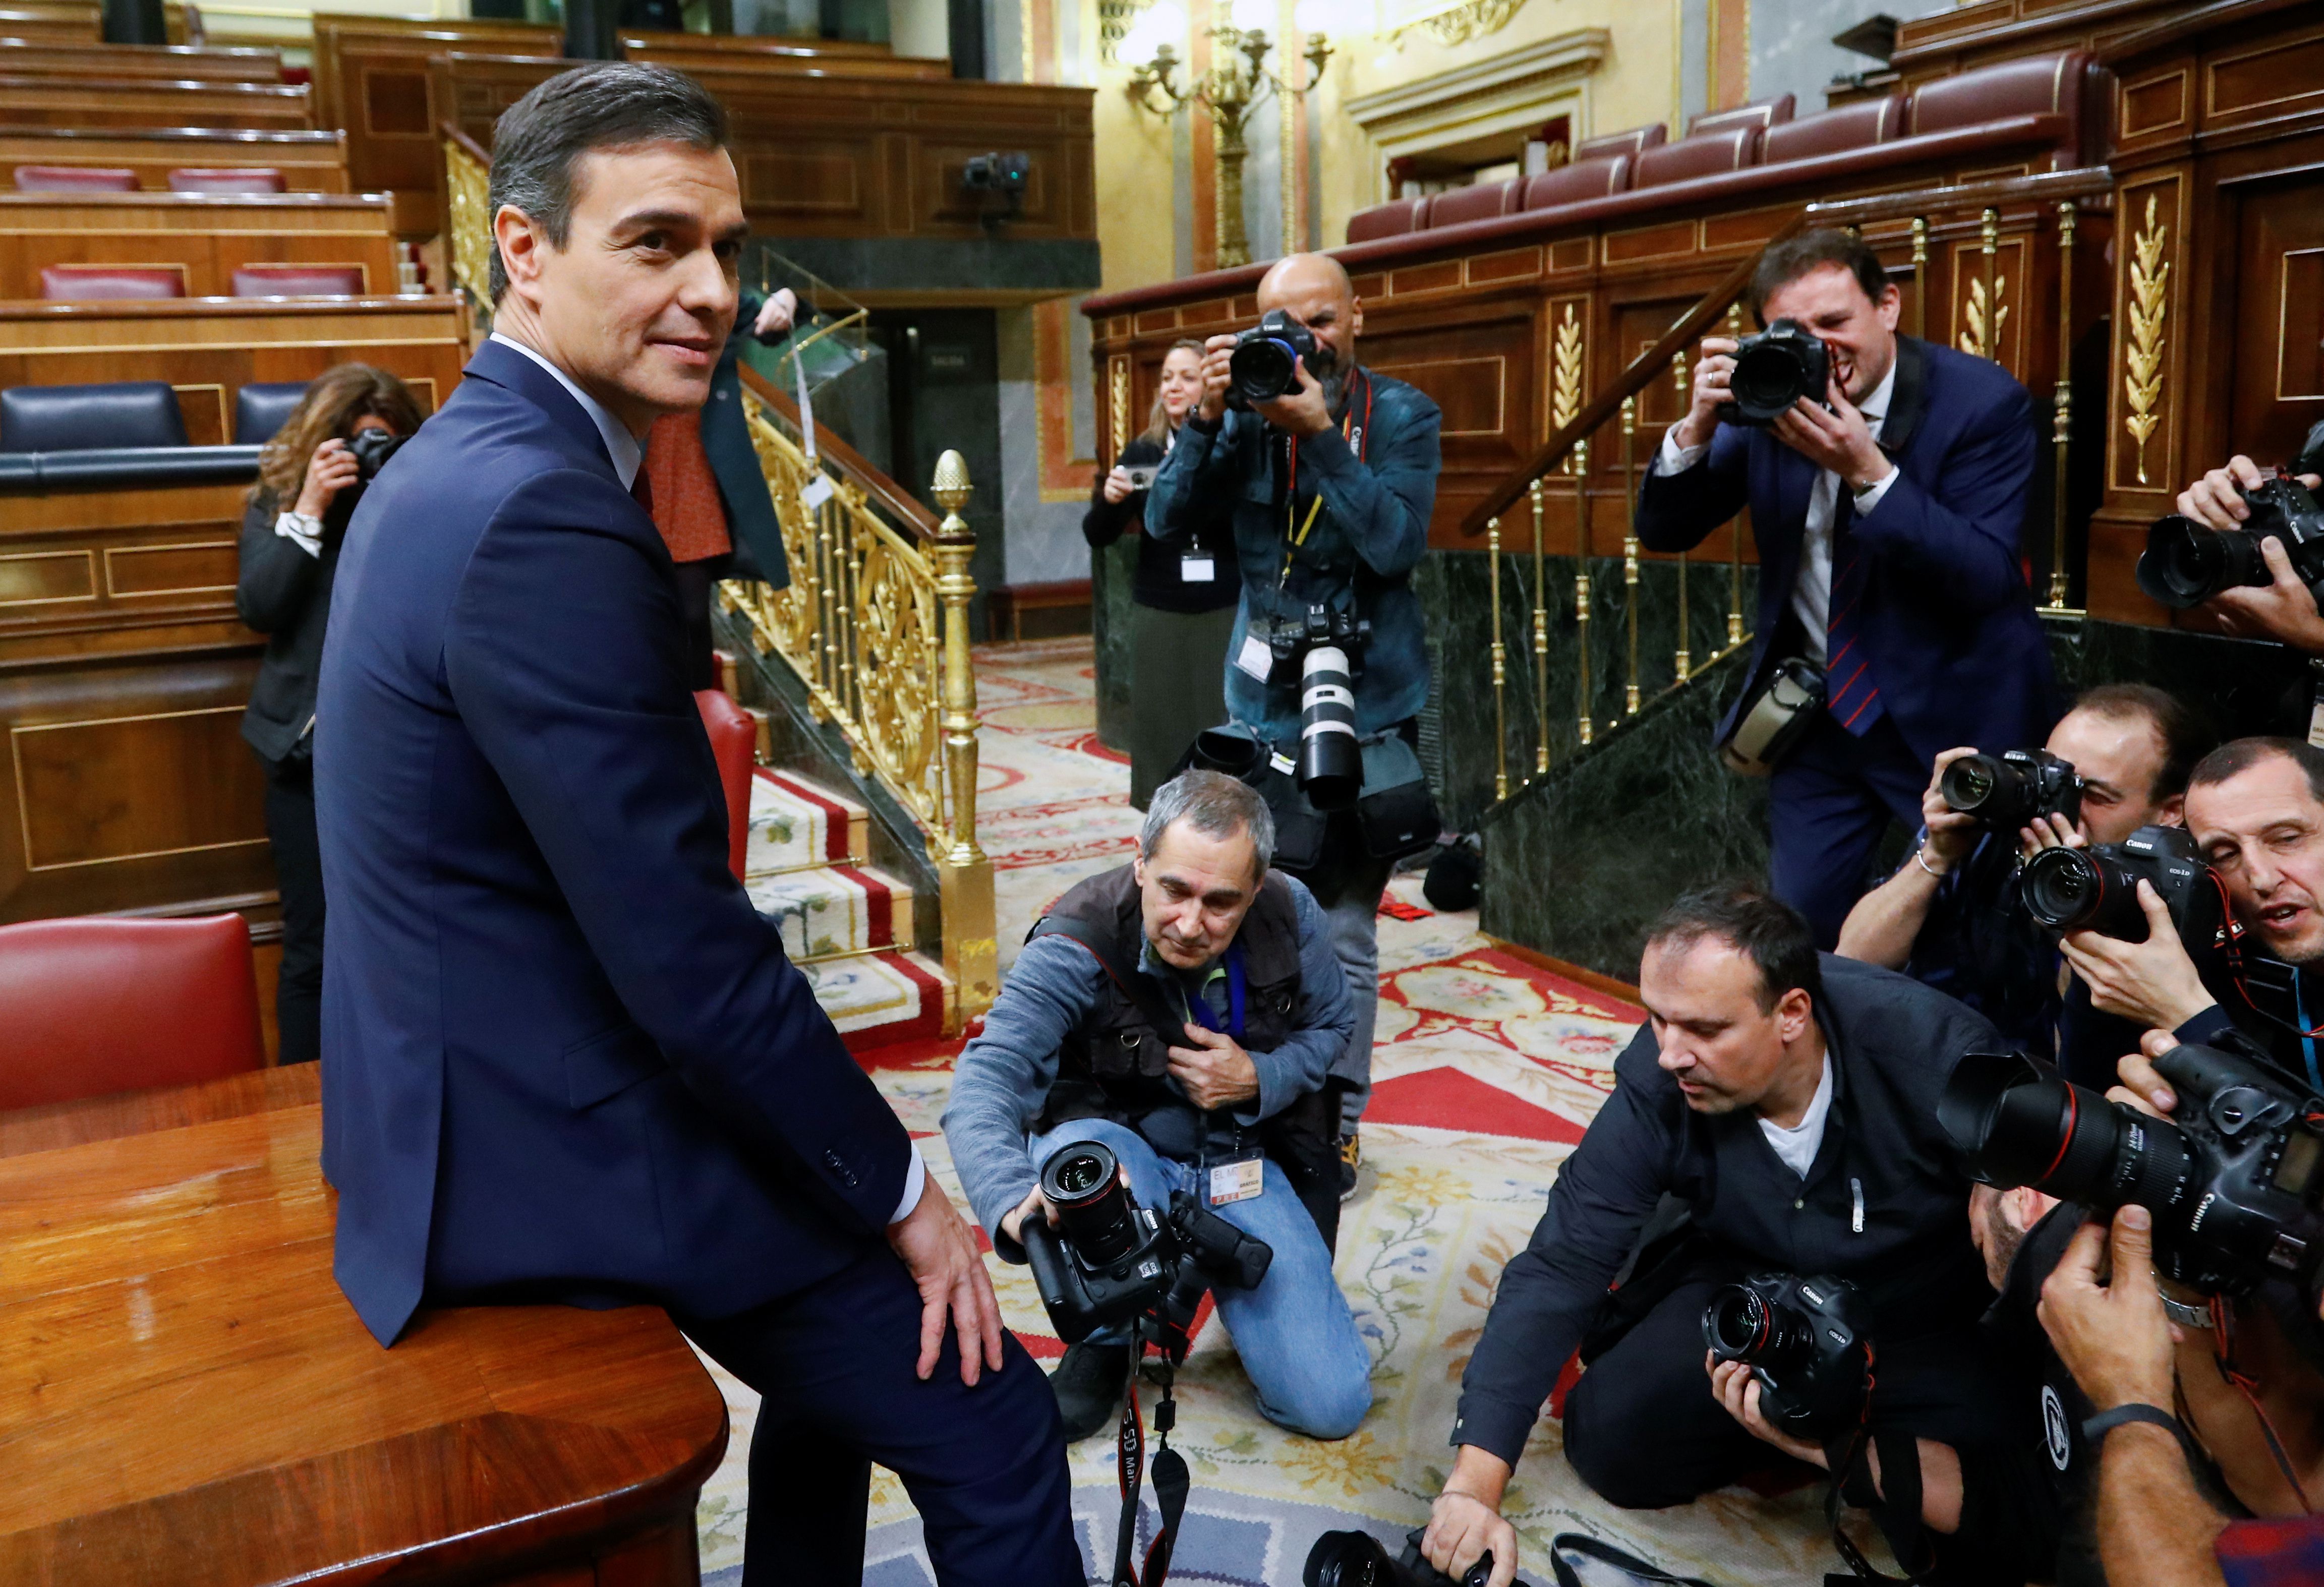 Sanchez posa para los fotógrafos tras la votación decisiva en el Congreso (REUTERS/Stringer)